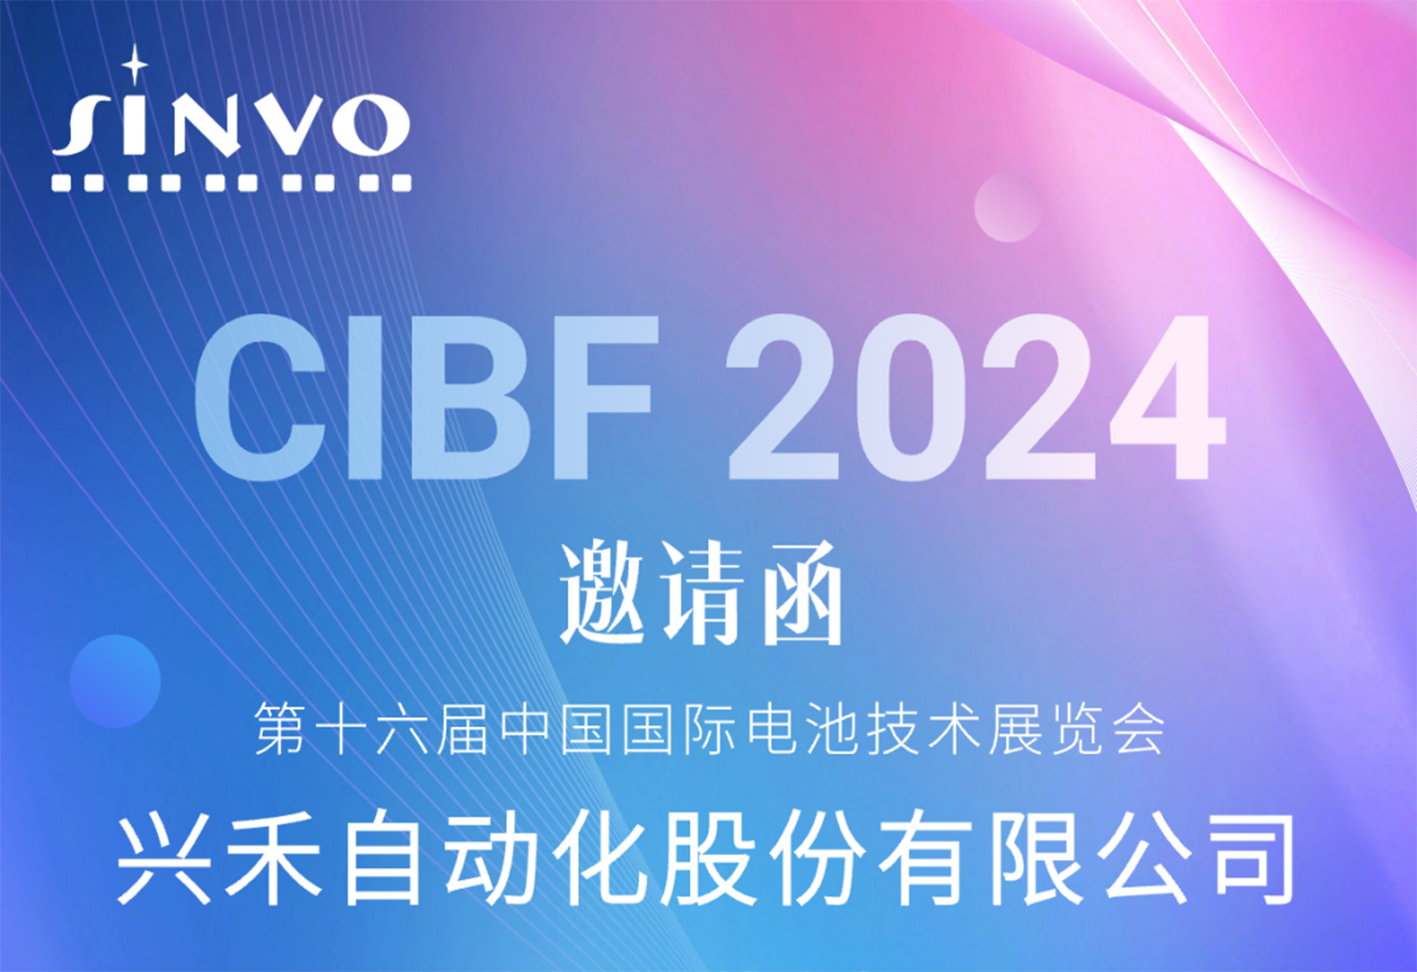 诚邀莅临|香港料大全邀您相约CIBF2024重庆国际电池技术交流会